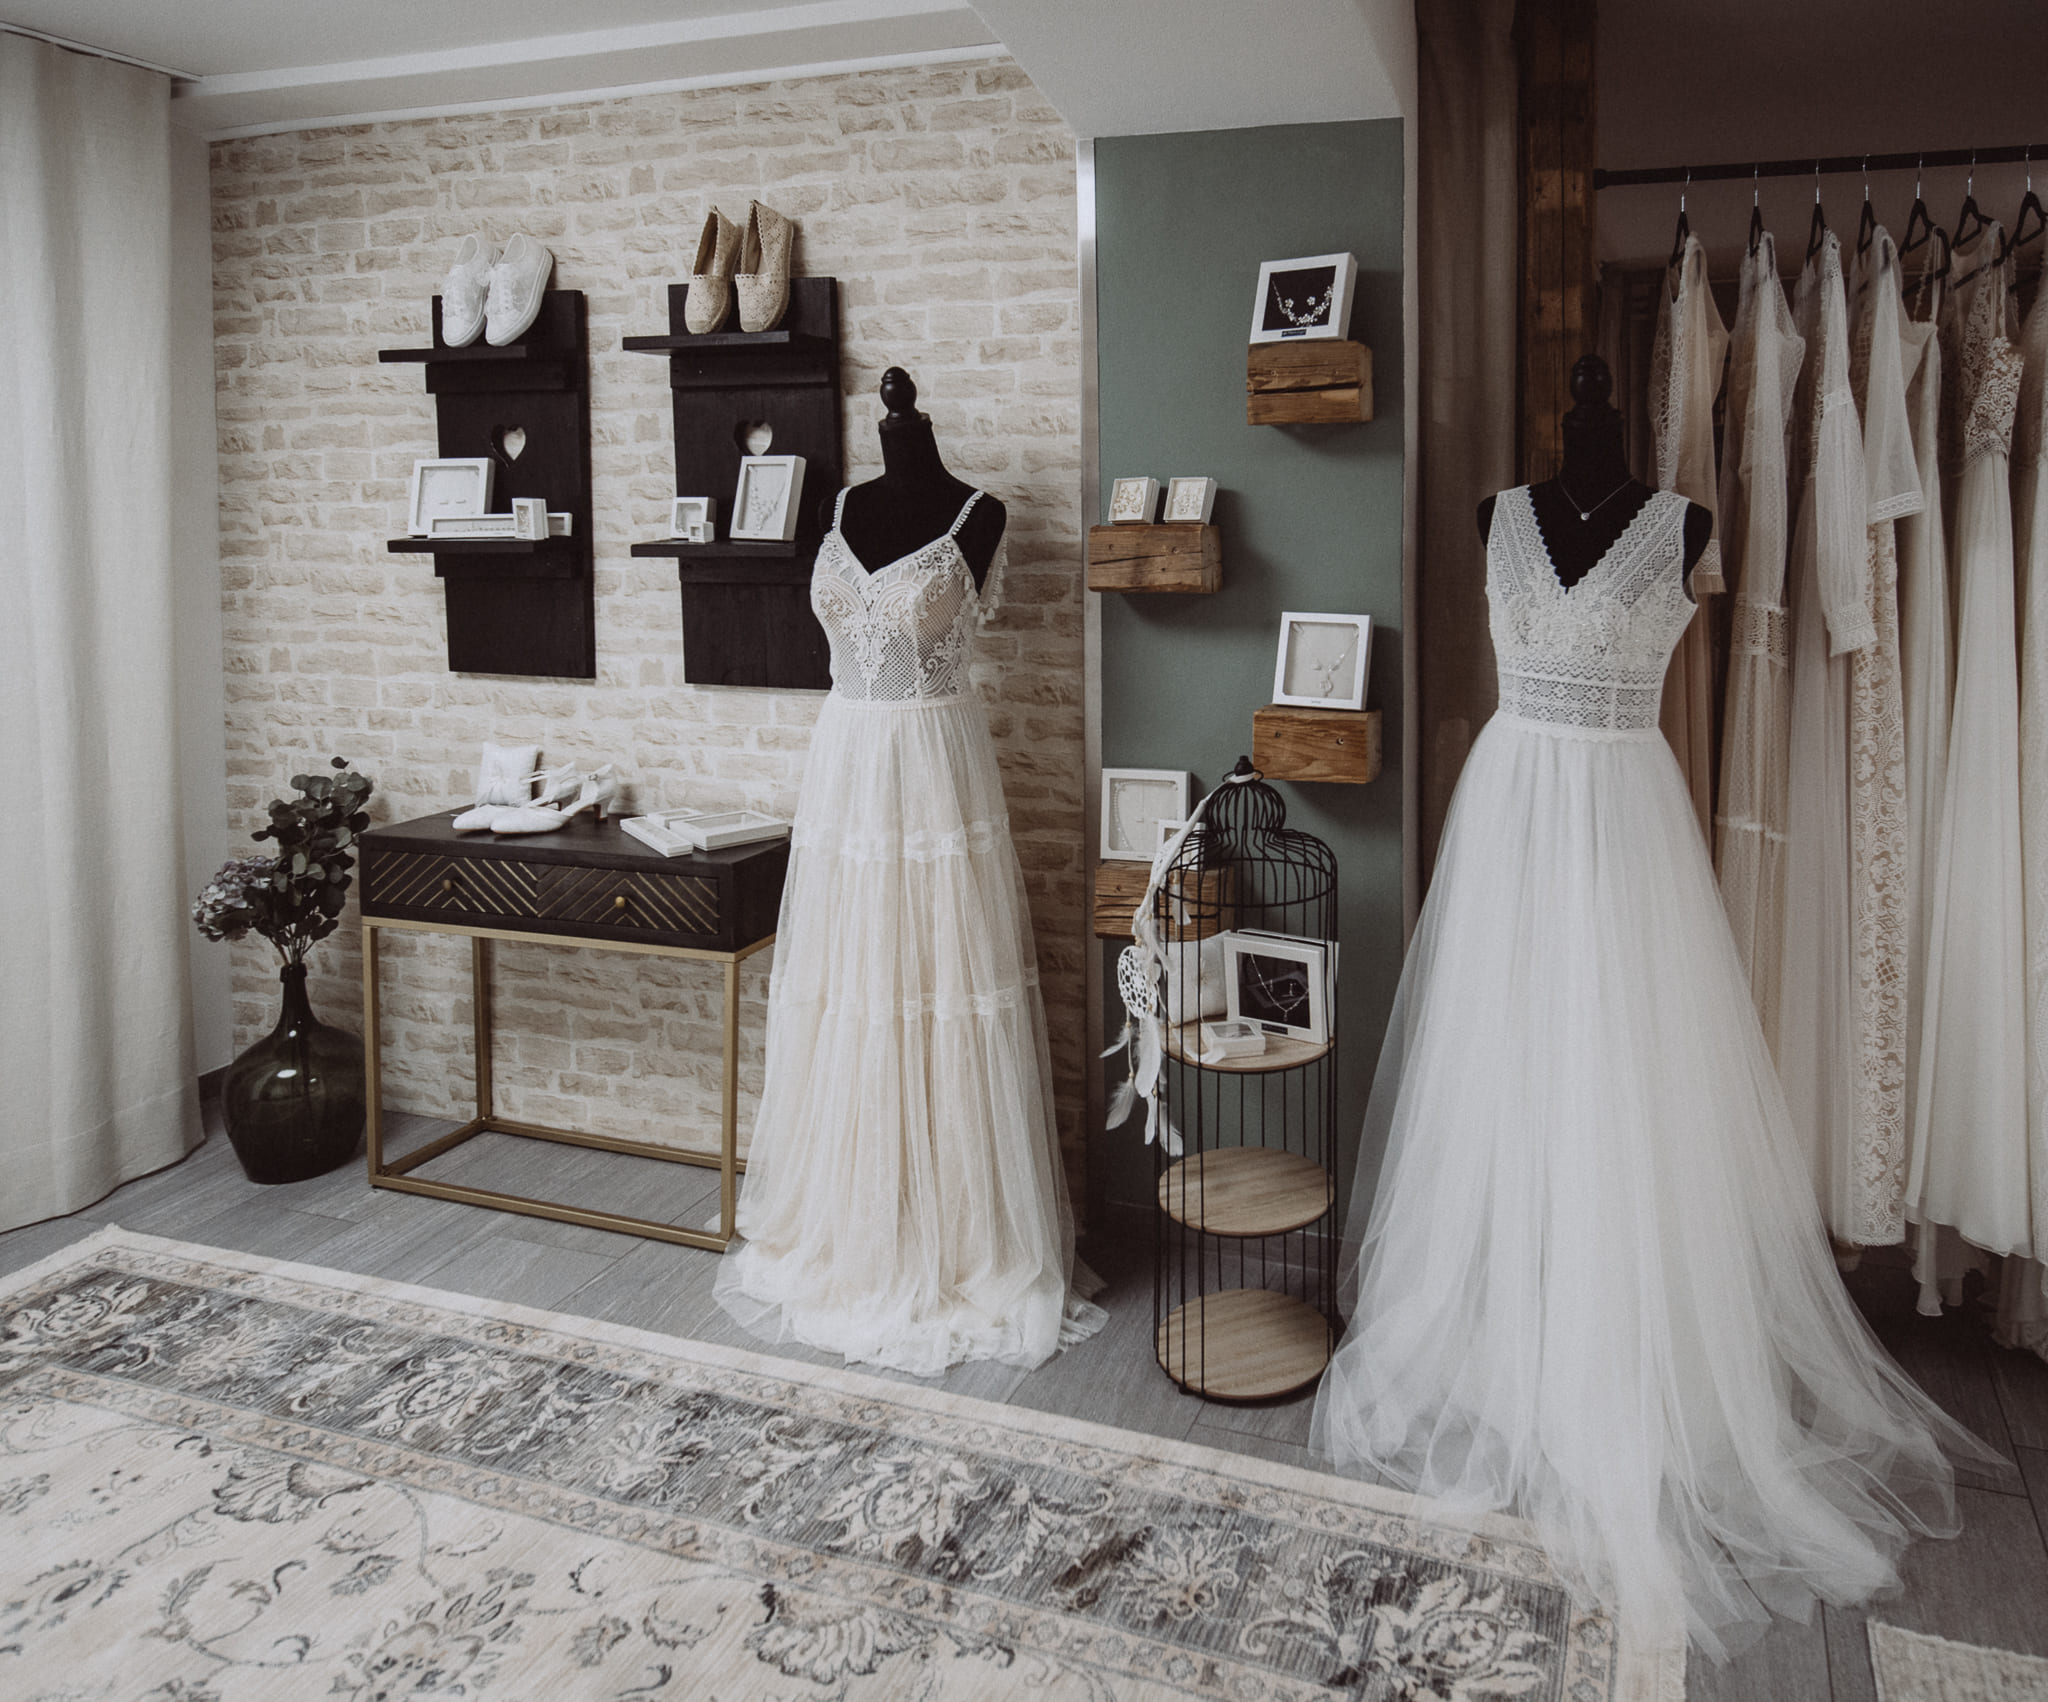 Boho Bride Boutique Brautmodengeschäft in Gommiswald